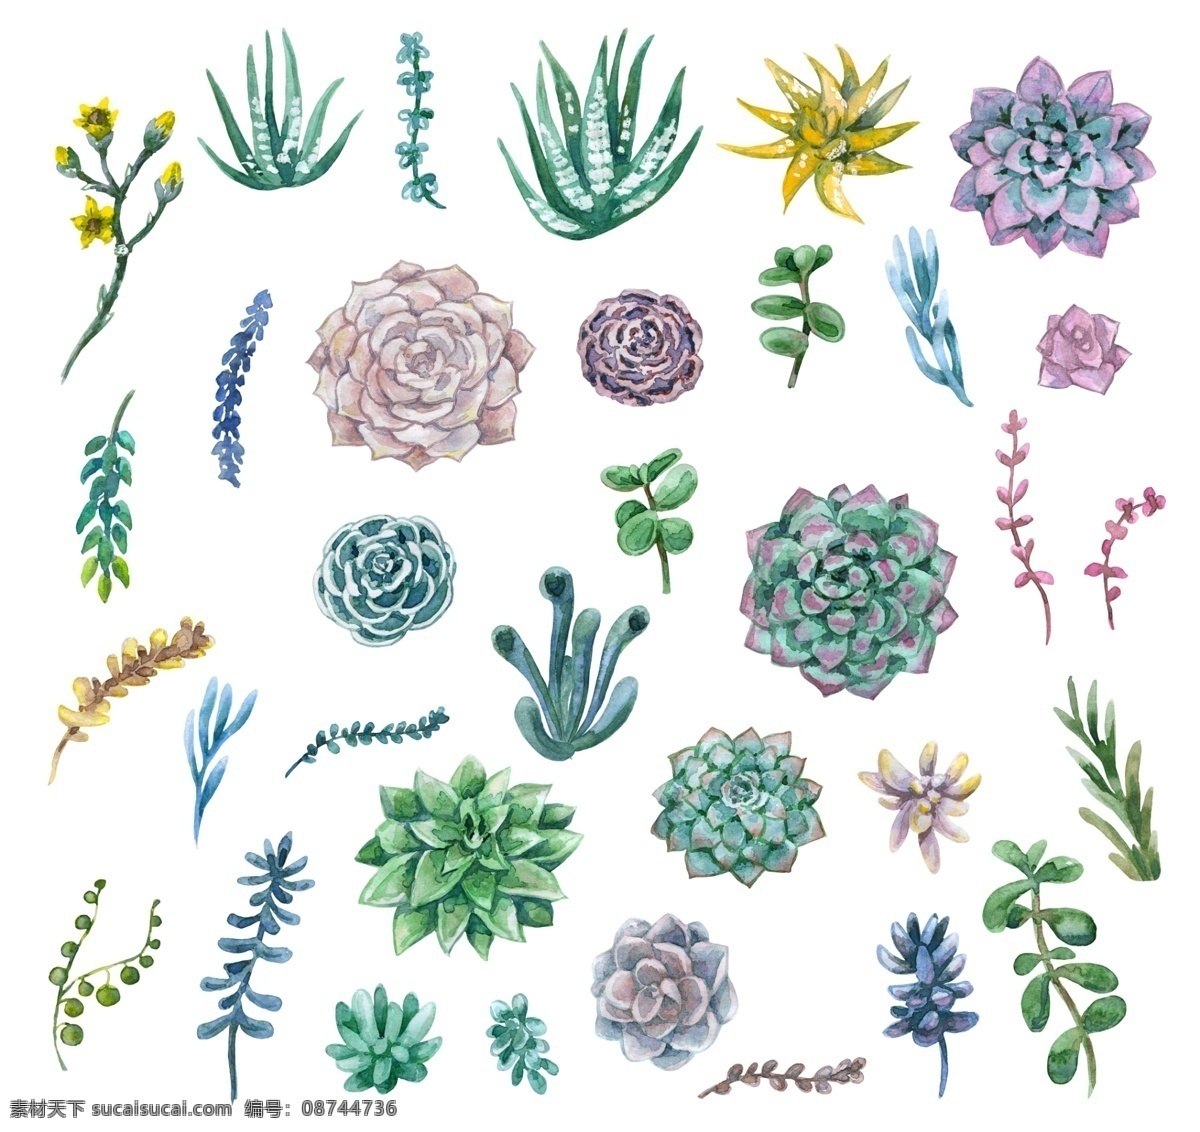 各类 植物 花卉 源文件 多肉 海报设计装饰 设计素材 树叶 淘宝素材 鲜花 装饰